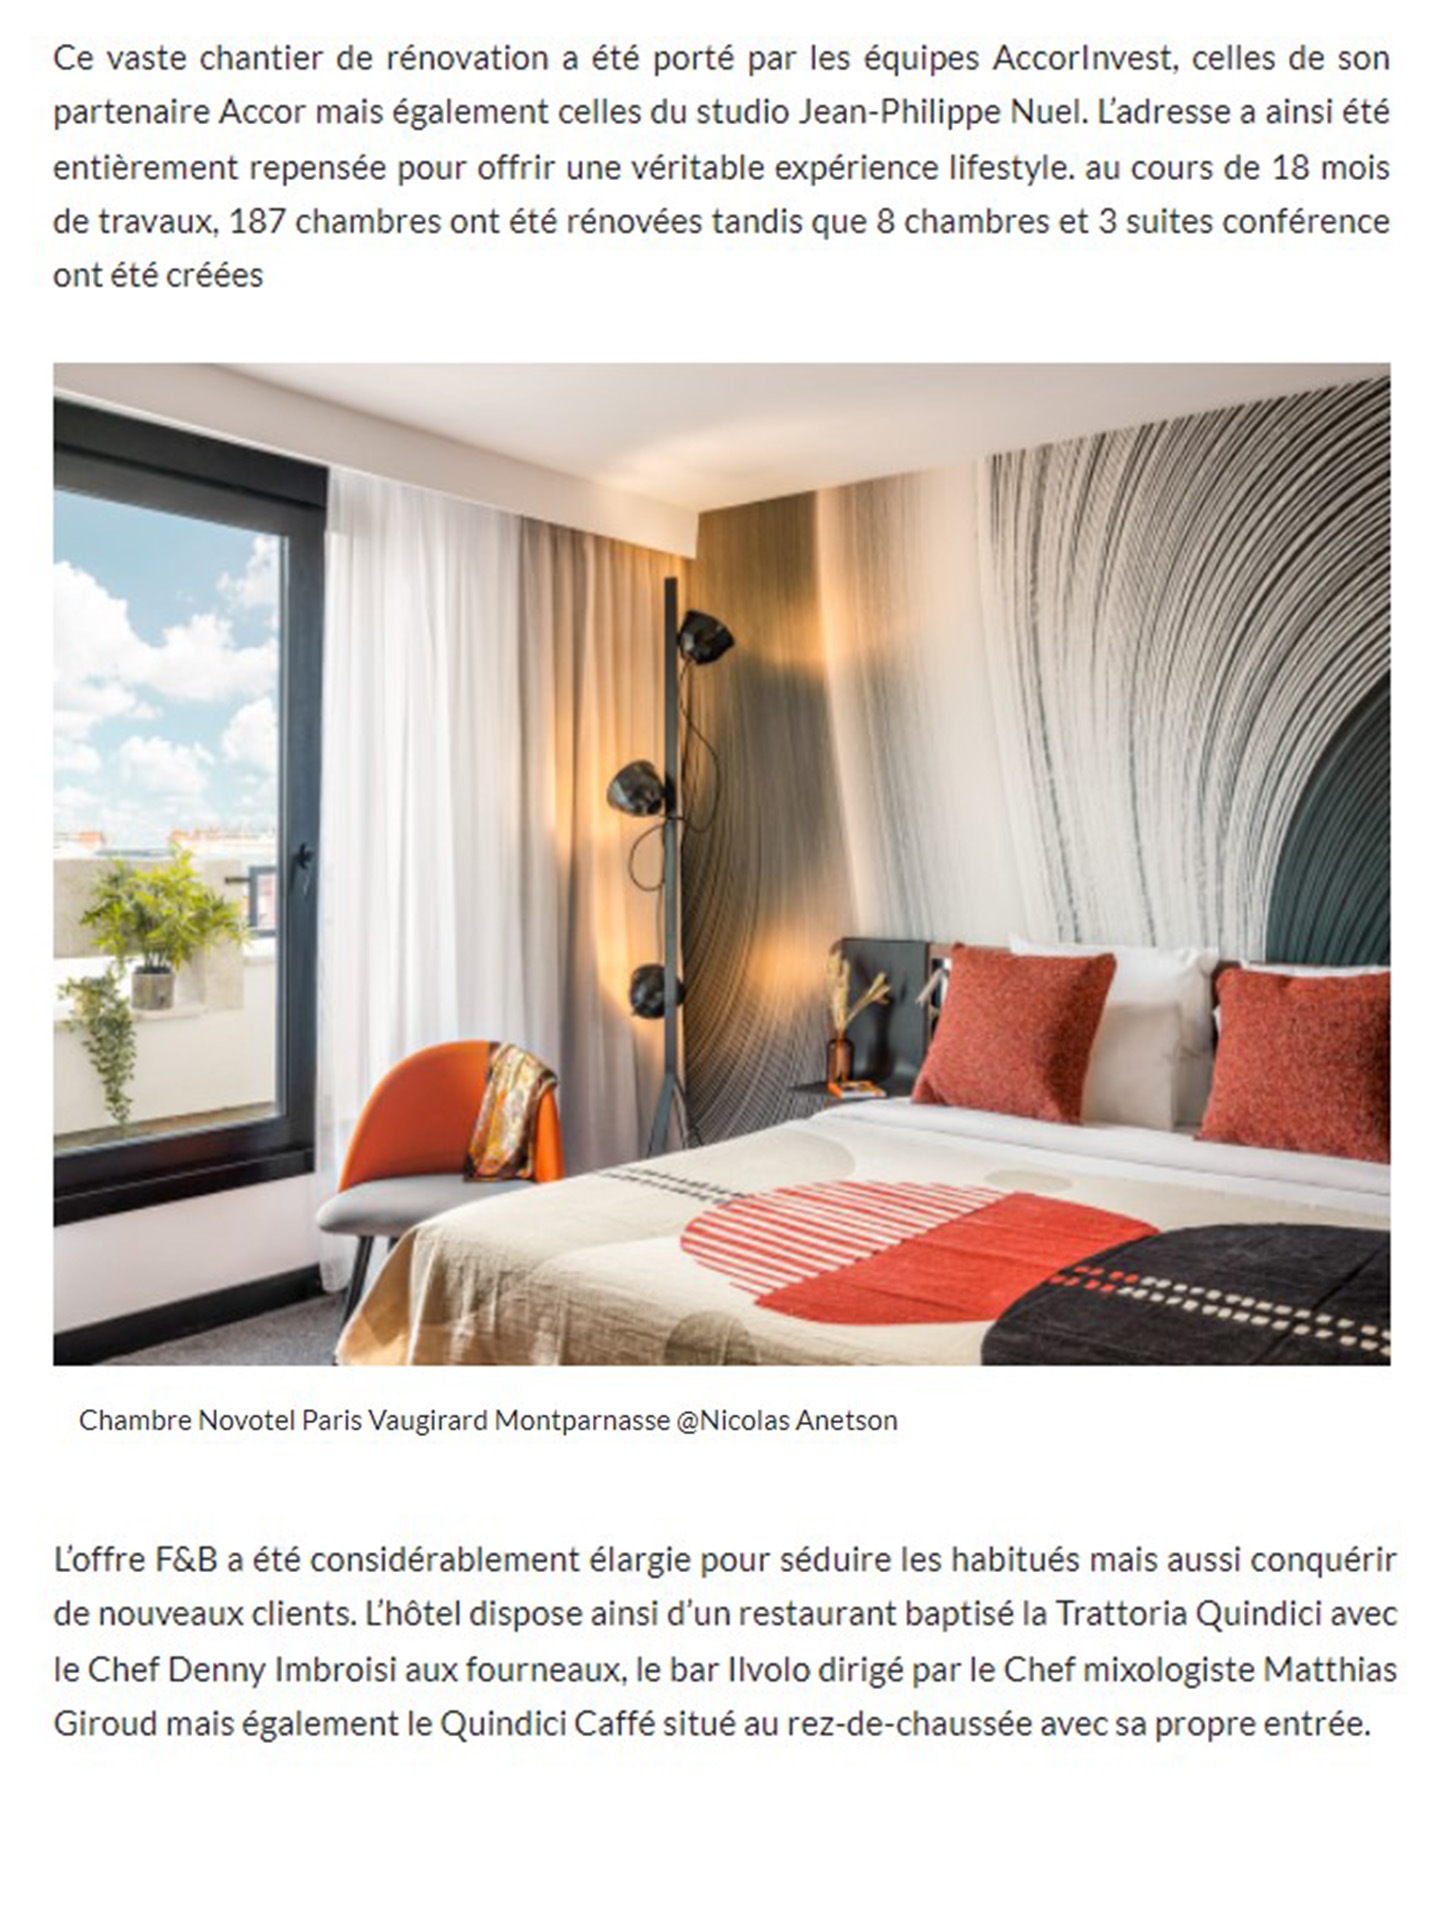 AccorInvest inaugure le Novotel Paris vaugirard rénové par le studio jean-philippe nuel, architecture d'intérieur, hôtel de luxe, hôtel lifestyle, décoration d'intérieur, hôtel parisien